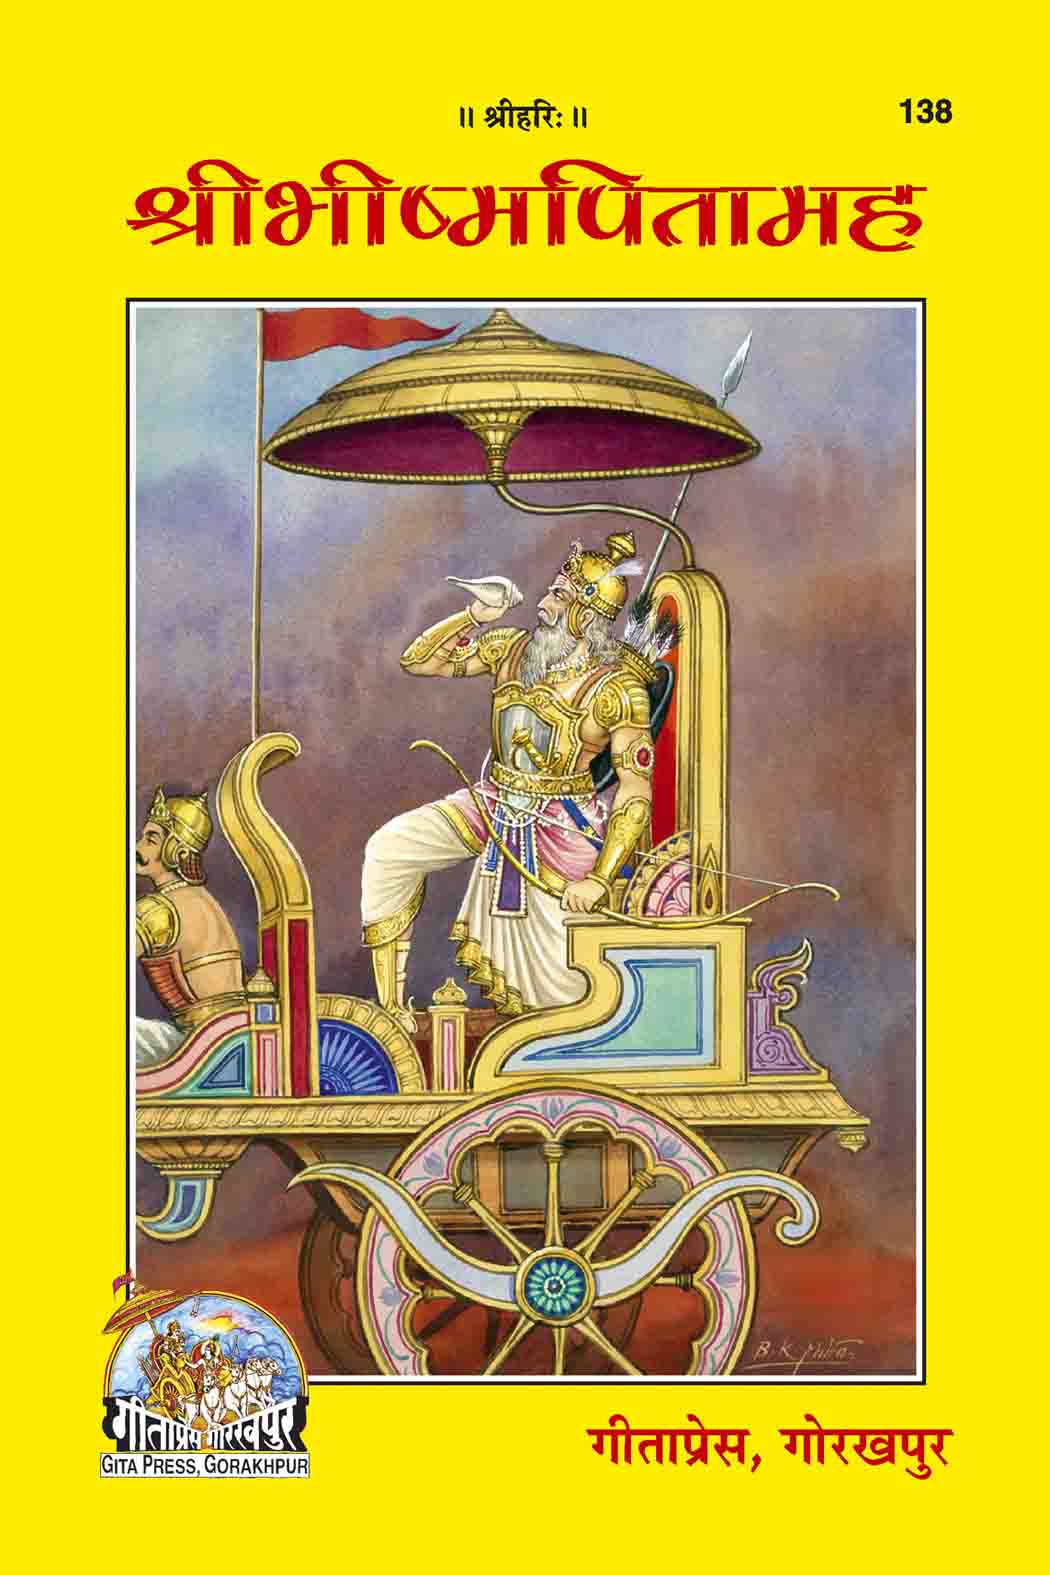 Shri-Bhishma-Pitamah by Gita Press